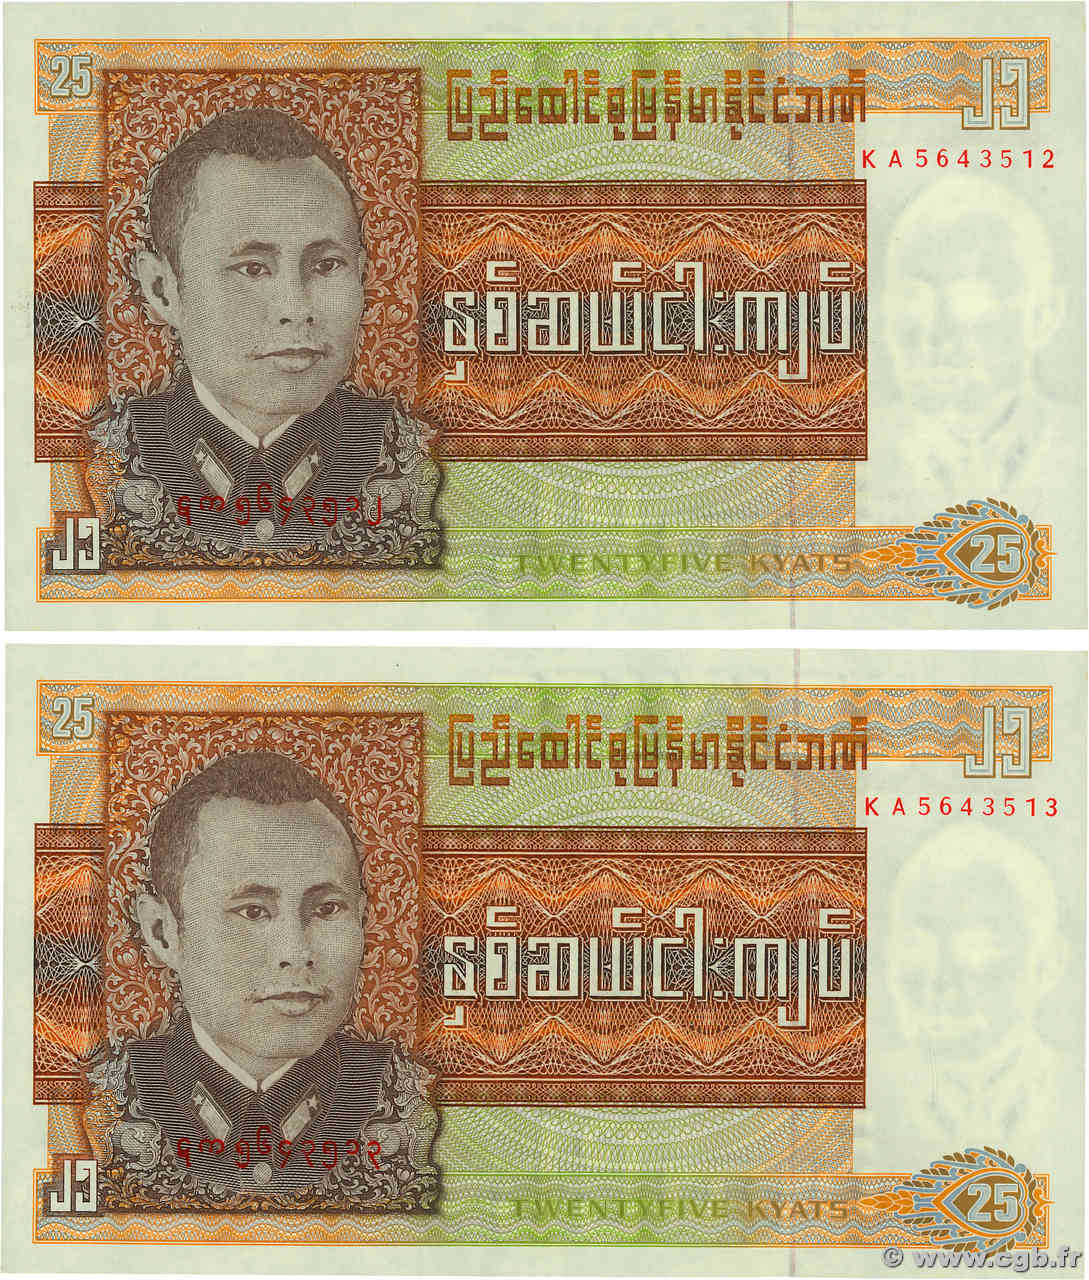 25 Kyats BURMA (VOIR MYANMAR)  1972 P.59 fST+